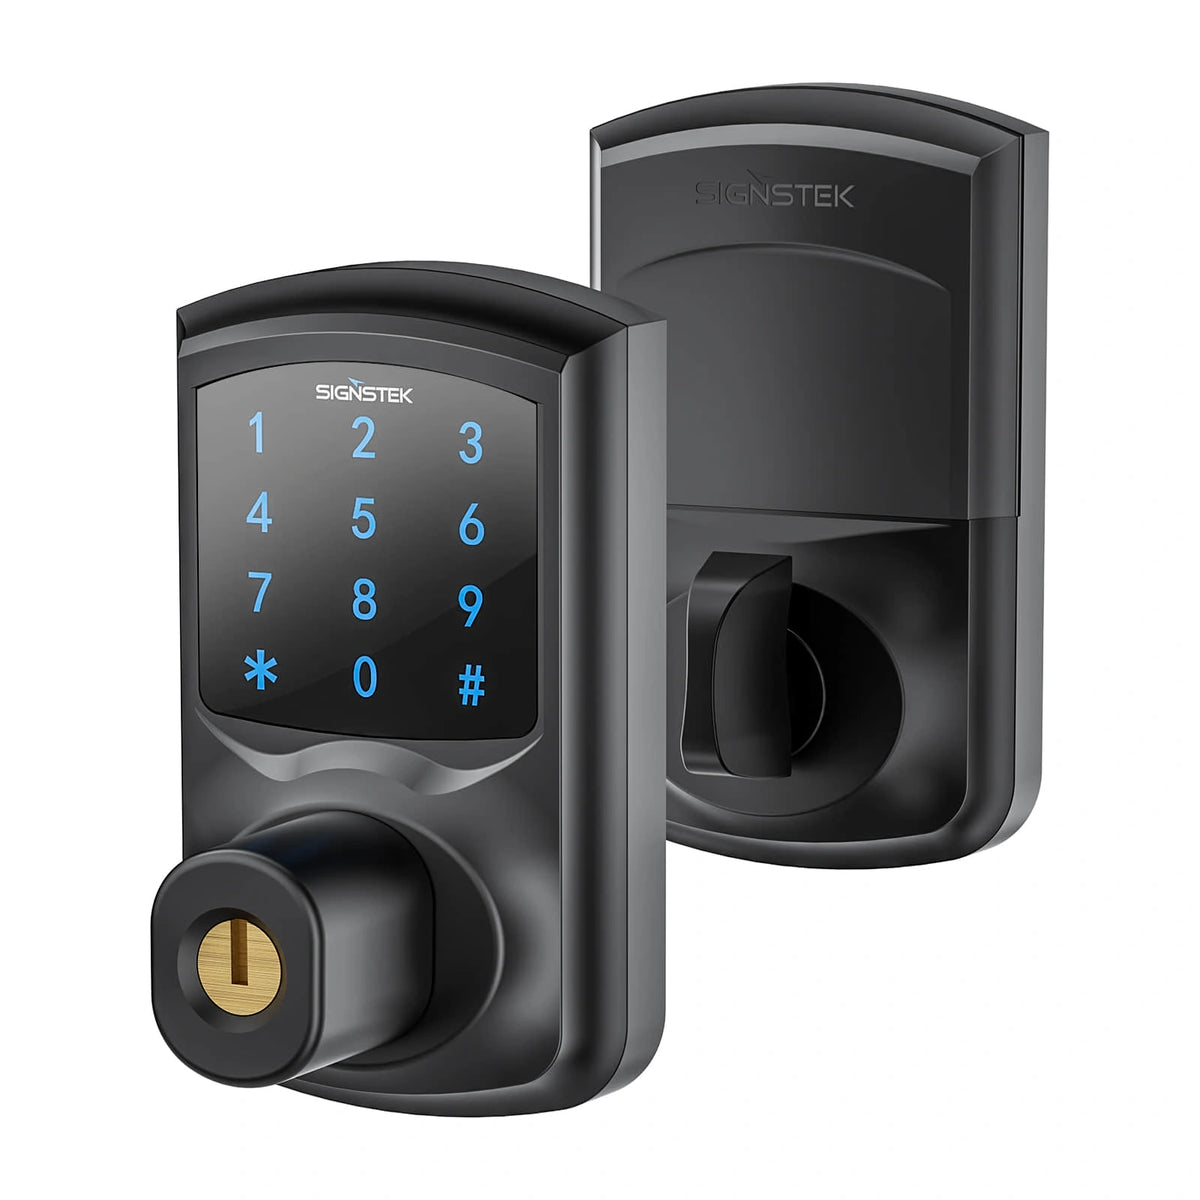 ST-668D digital touchscreen keypad deadbolt lock and smart front door lock (black)